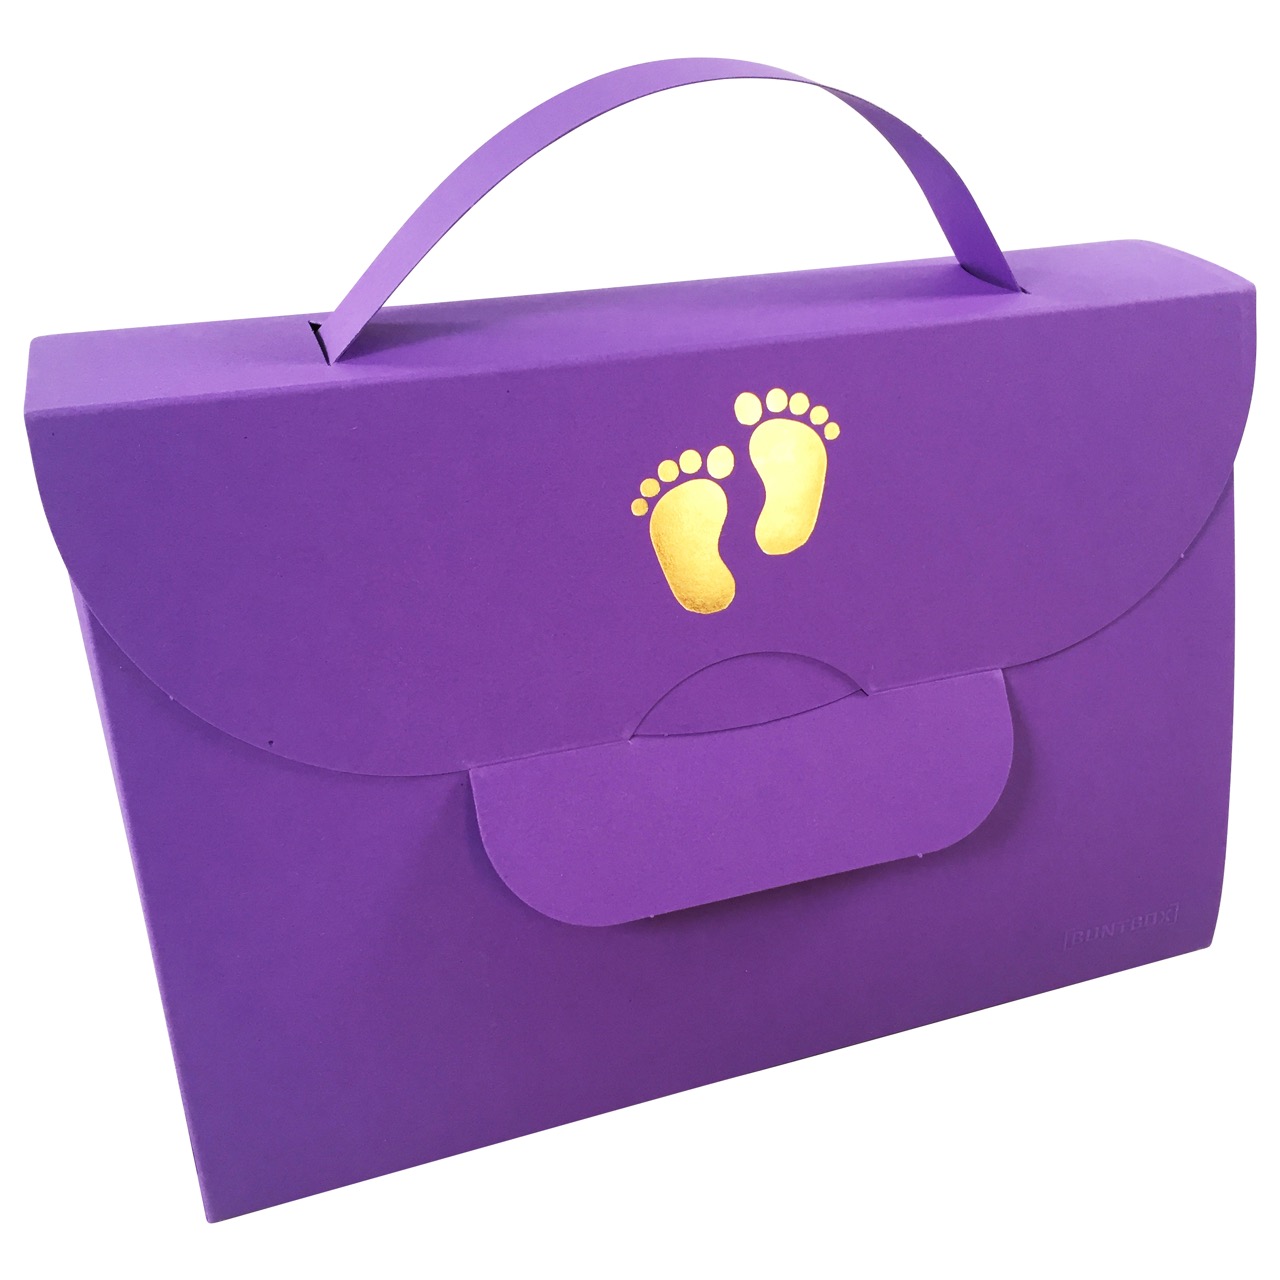 Buntbox Handbag Baby Foot